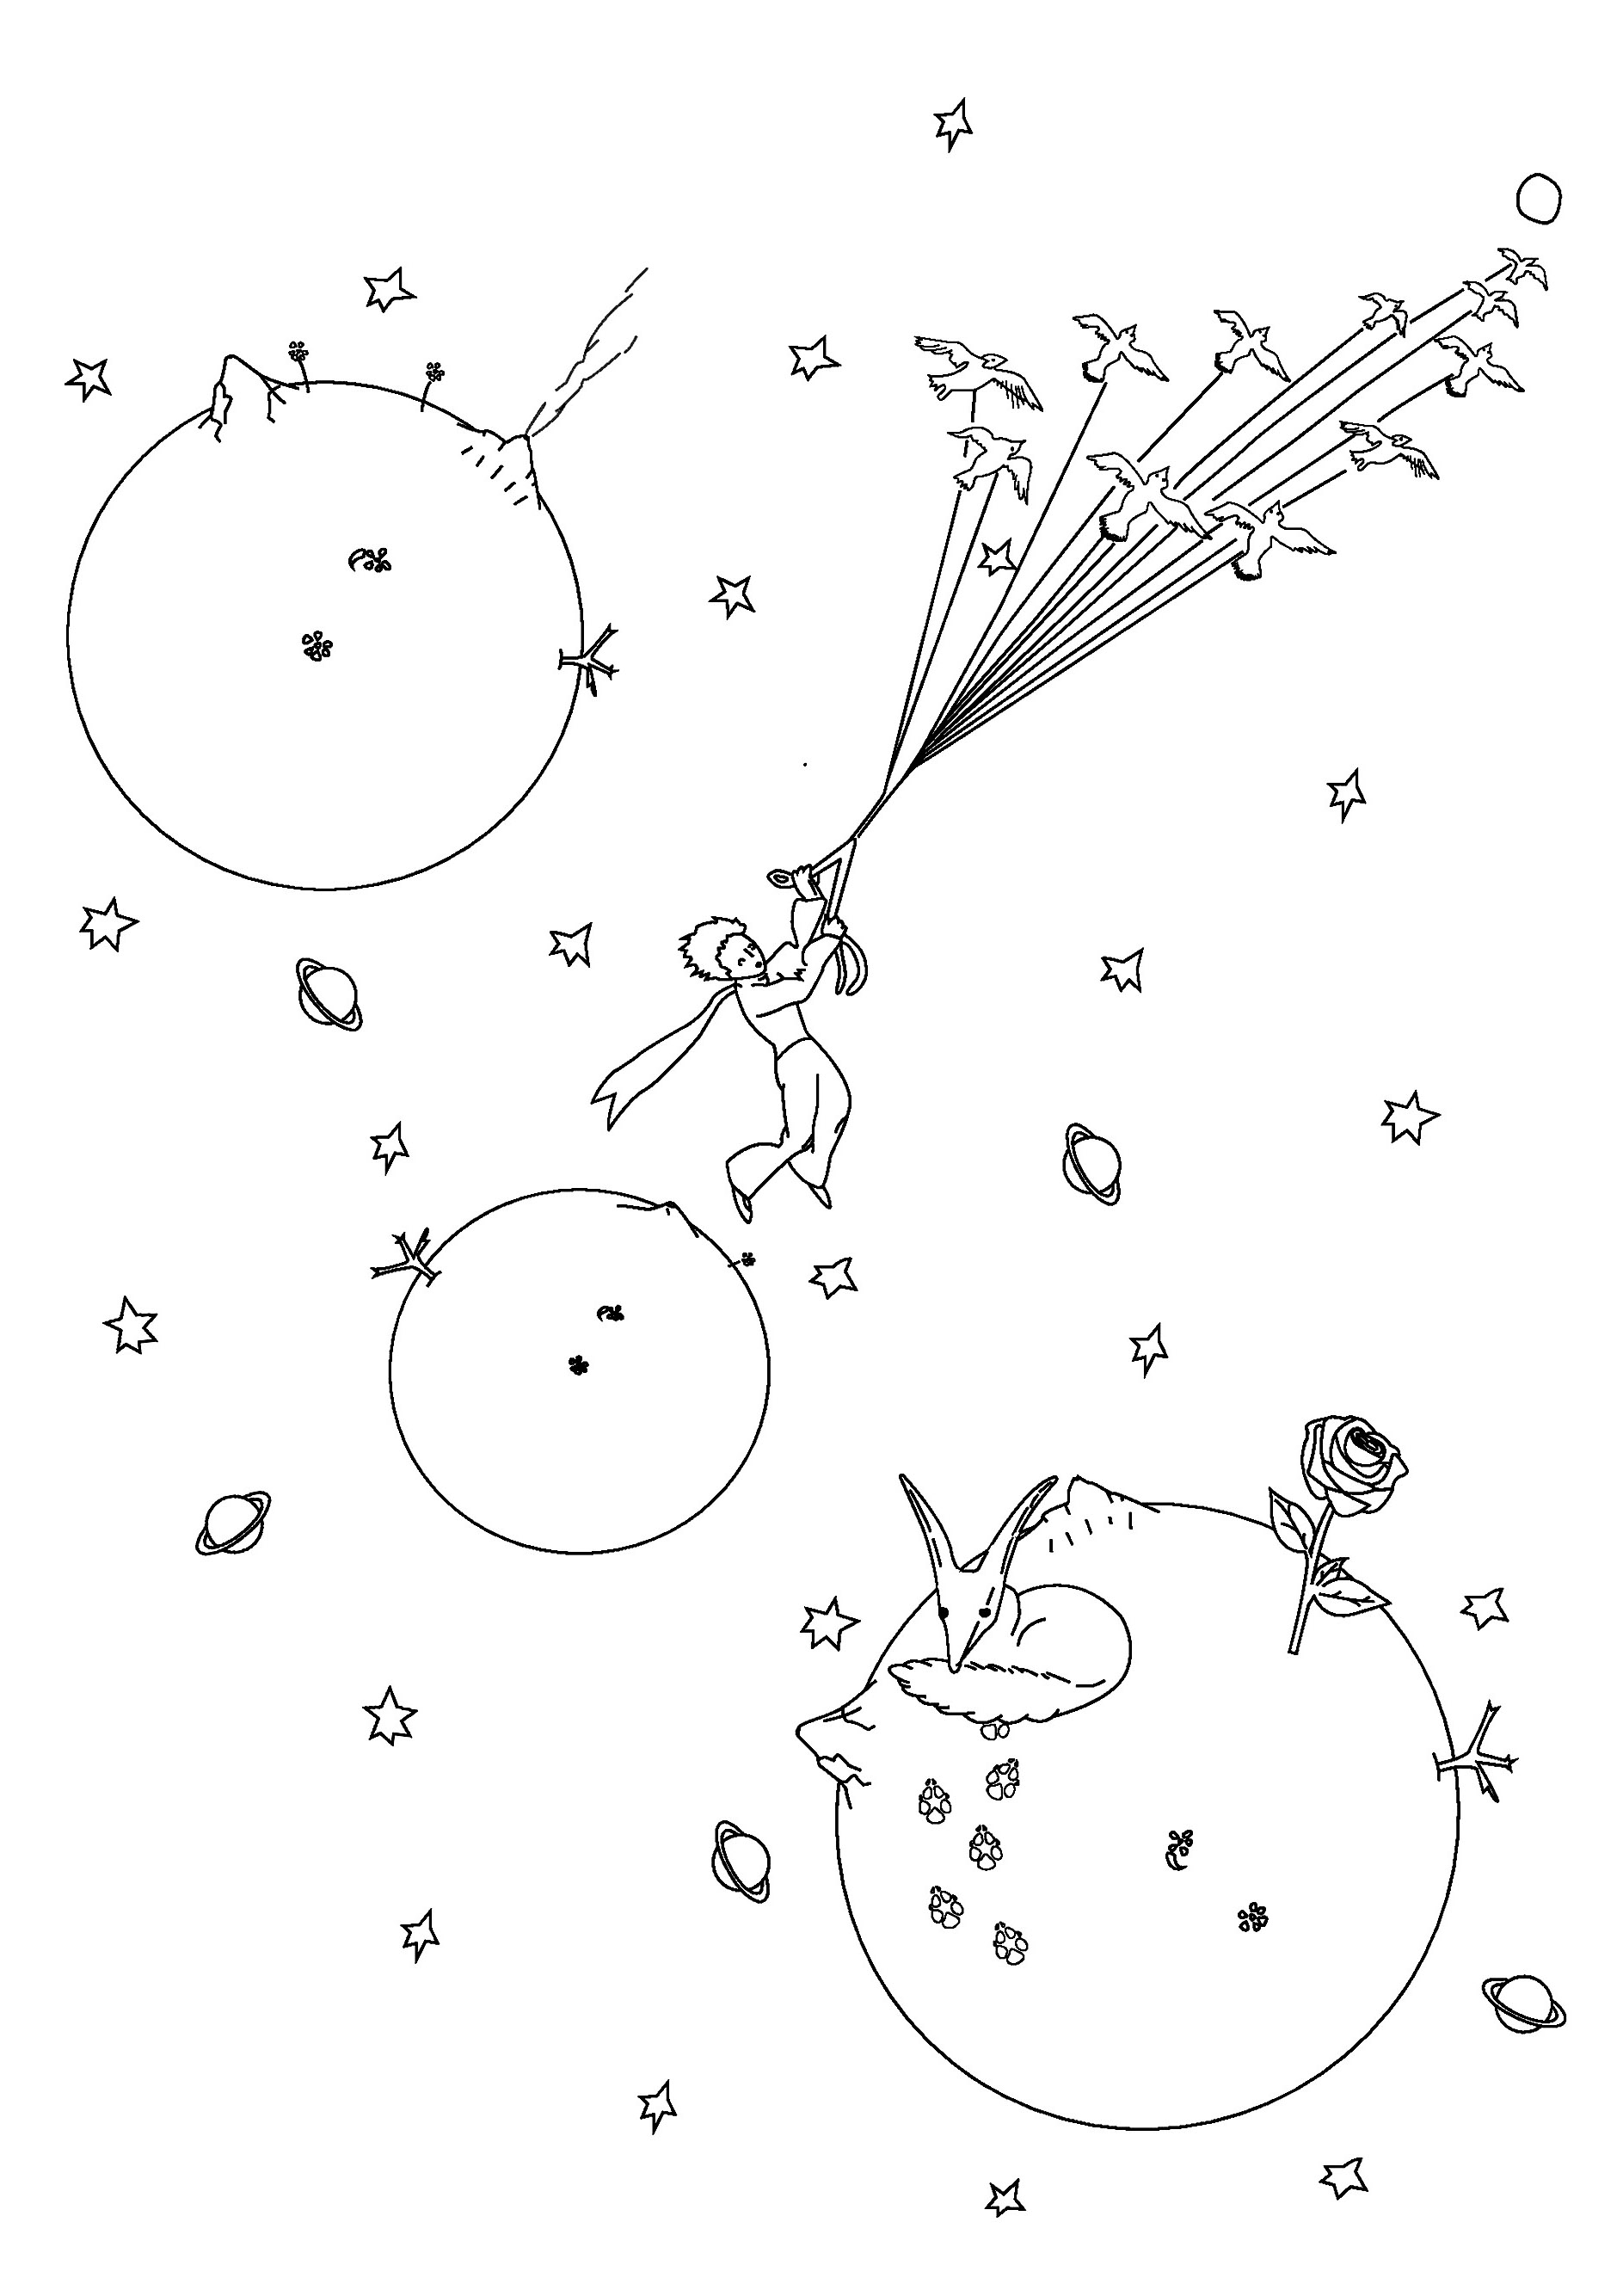 Cor O pequeno Príncipe enquanto voa pelo espaço com as suas mágicas estrelas cadentes